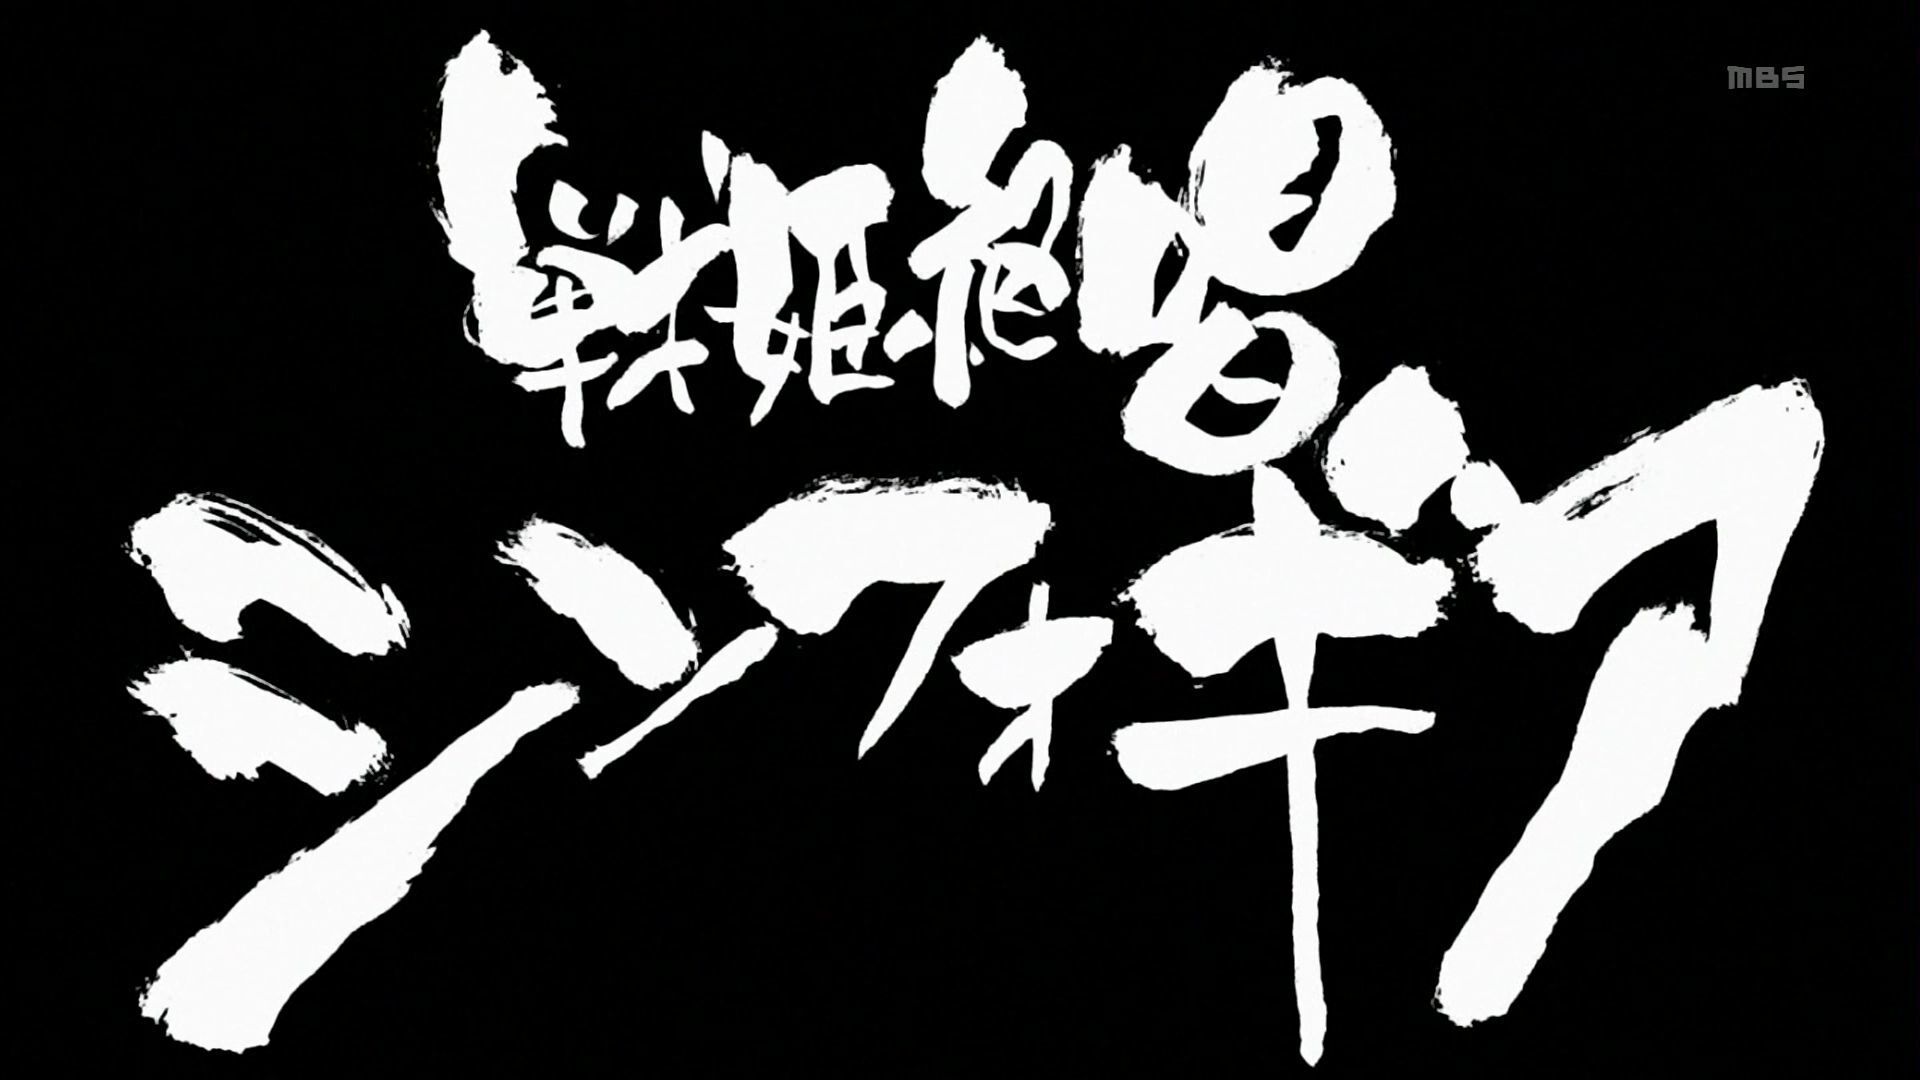 戦姫絶唱シンフォギア 1920 X 1080 Px アニメ壁紙 Com